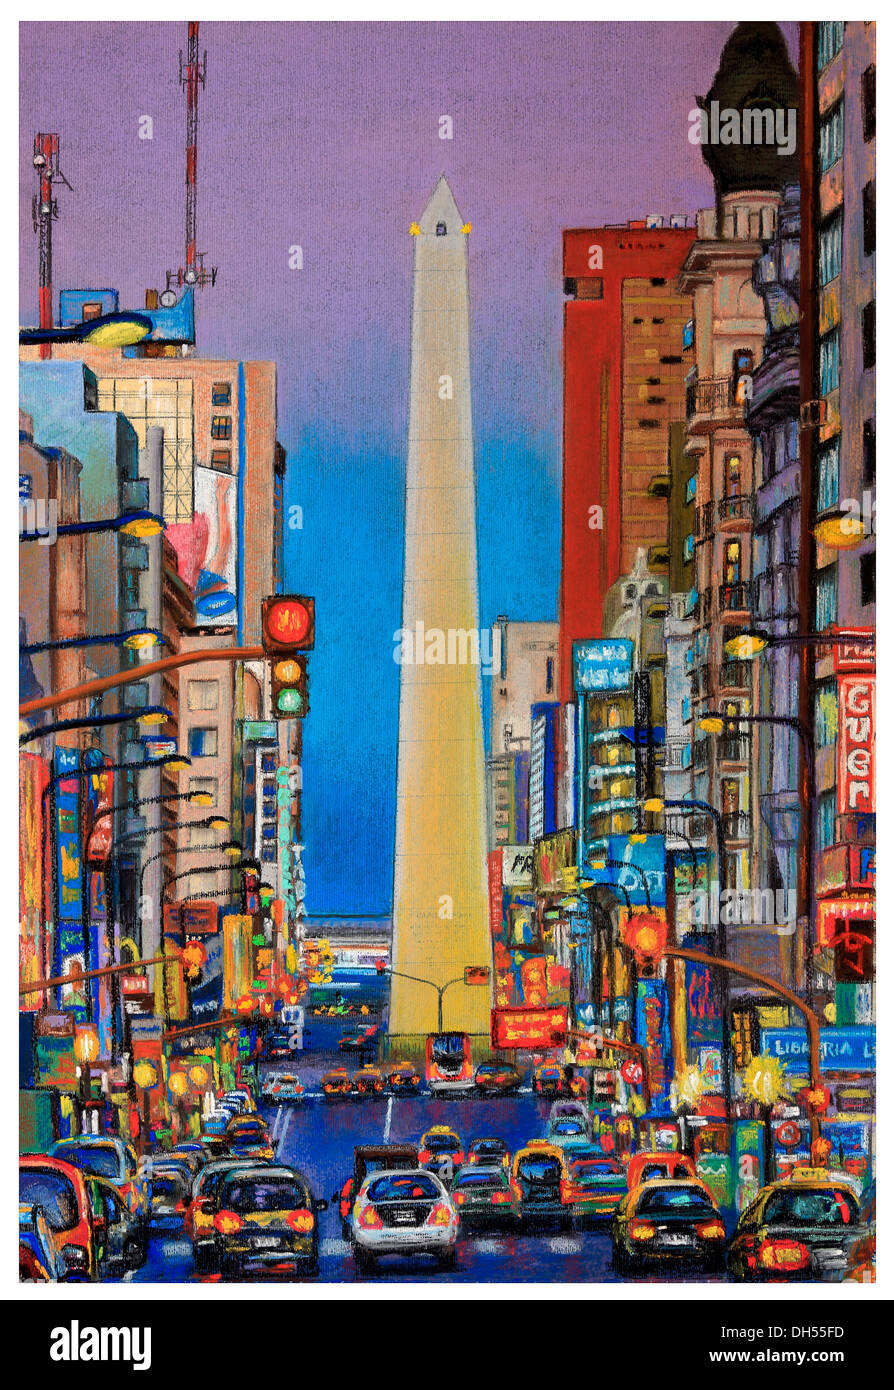 Pastel pintura de Bernardo galmarini: Avenida Corrientes, con el Obelisco Monumento y automóviles, por la noche. Buenos Aires, Argentina Foto de stock